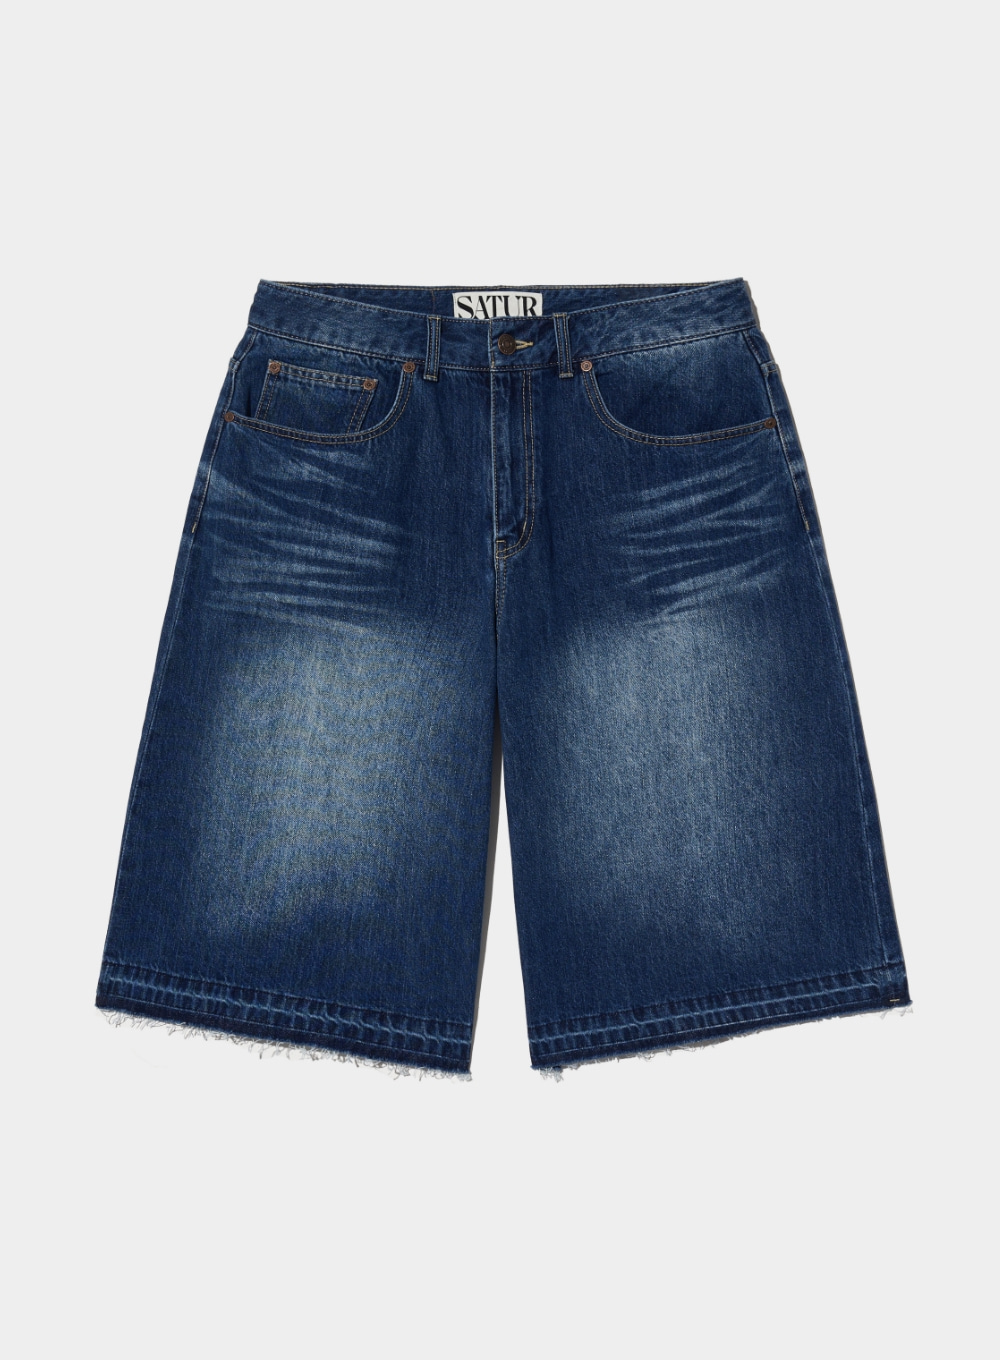 [5,000원 쿠폰] Gabon Denim Bermuda Pants - Indigo Blue